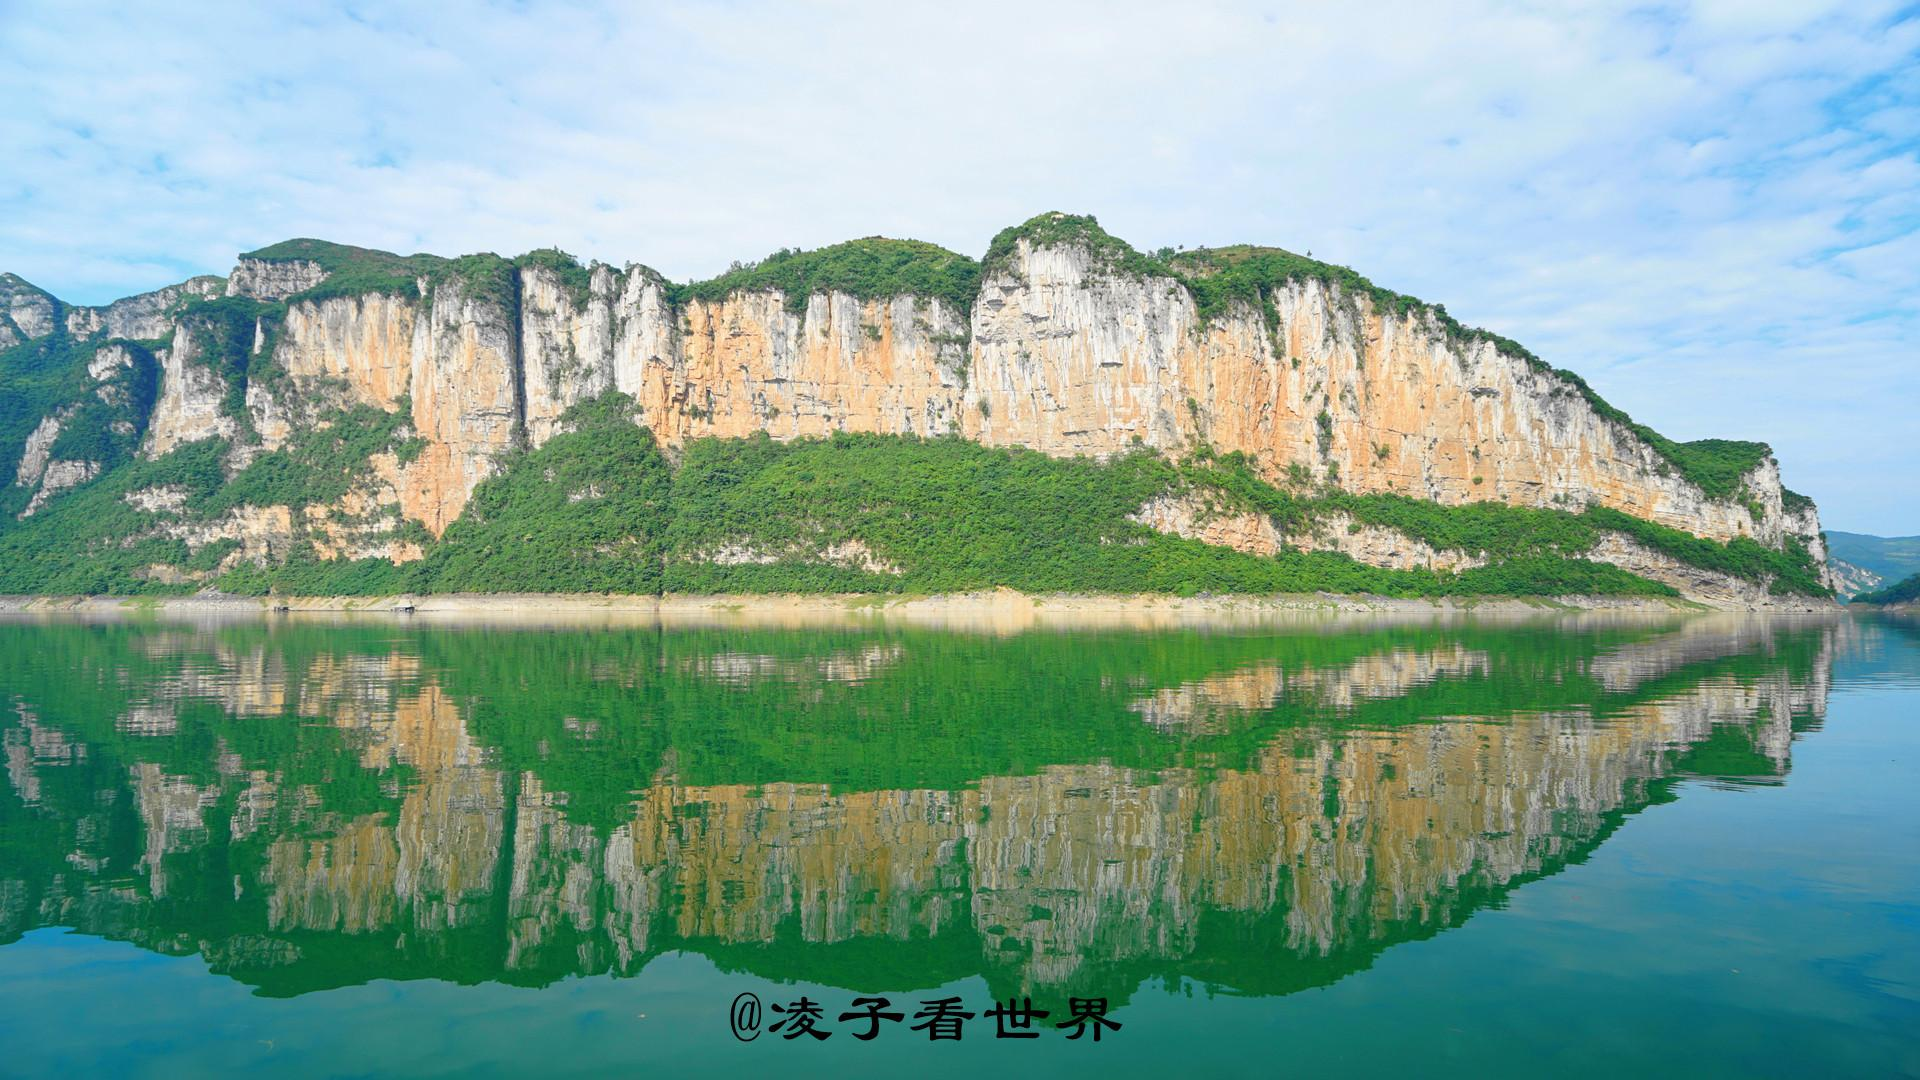 乌江源头最美的风景在东风湖